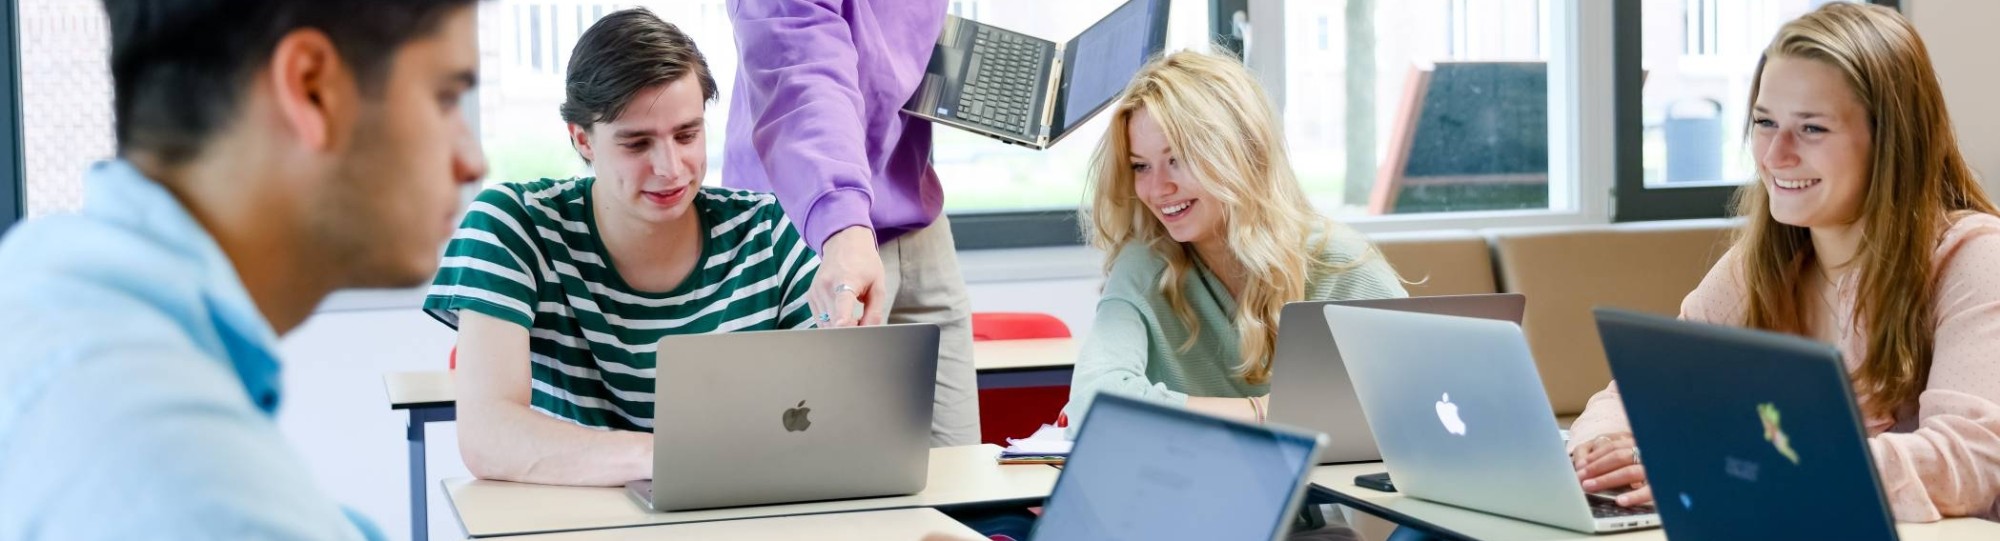 Foto Bedrijfskunde voltijd Nijmegen, klassetting, studenten, samenwerken, laptops